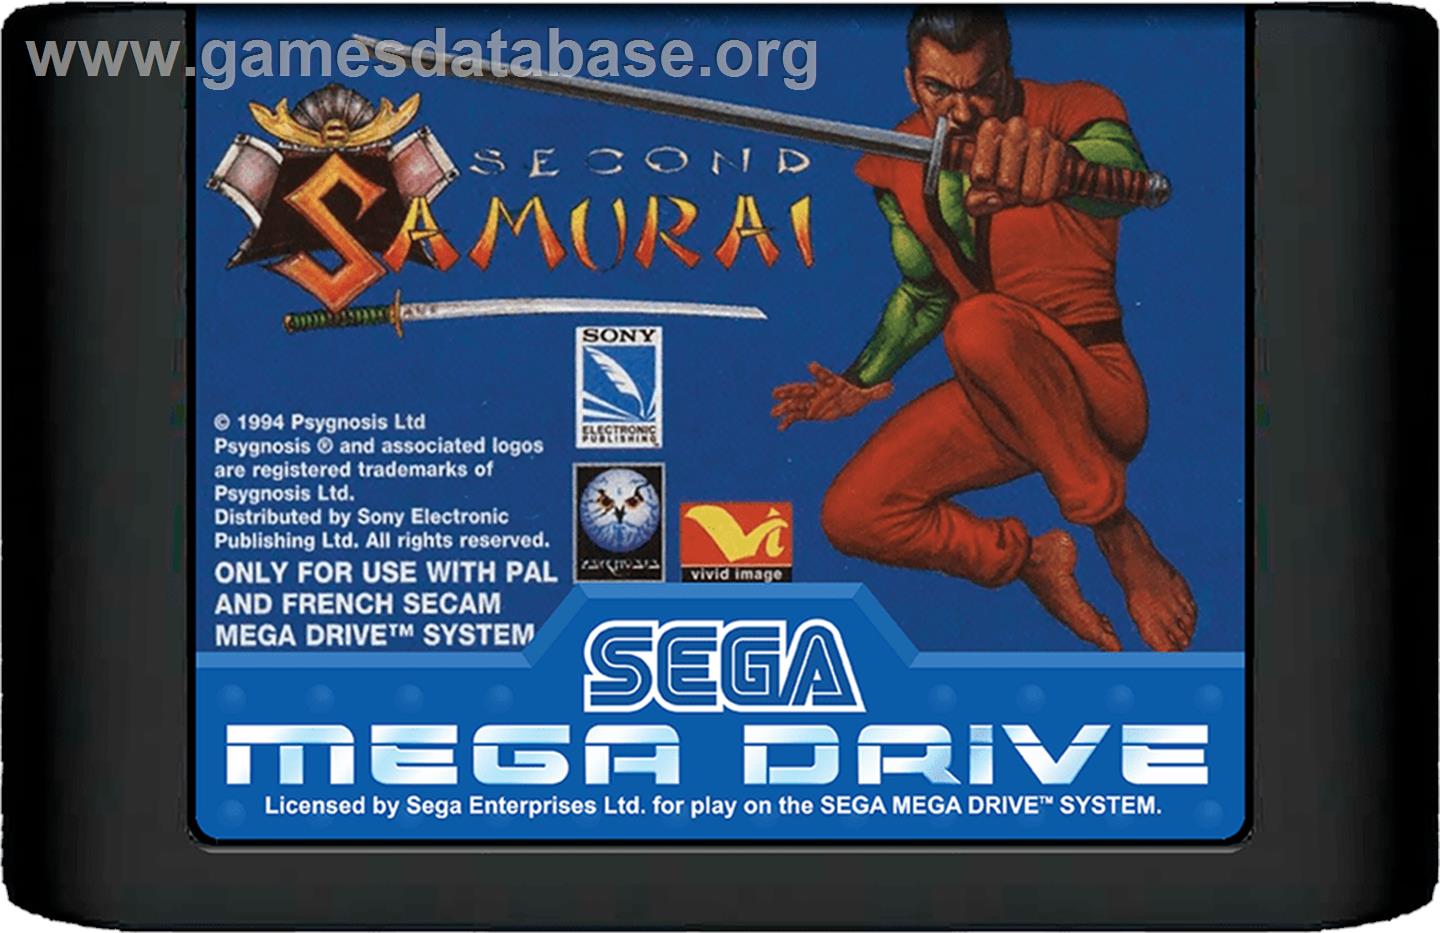 Second Samurai - Sega Genesis - Artwork - Cartridge